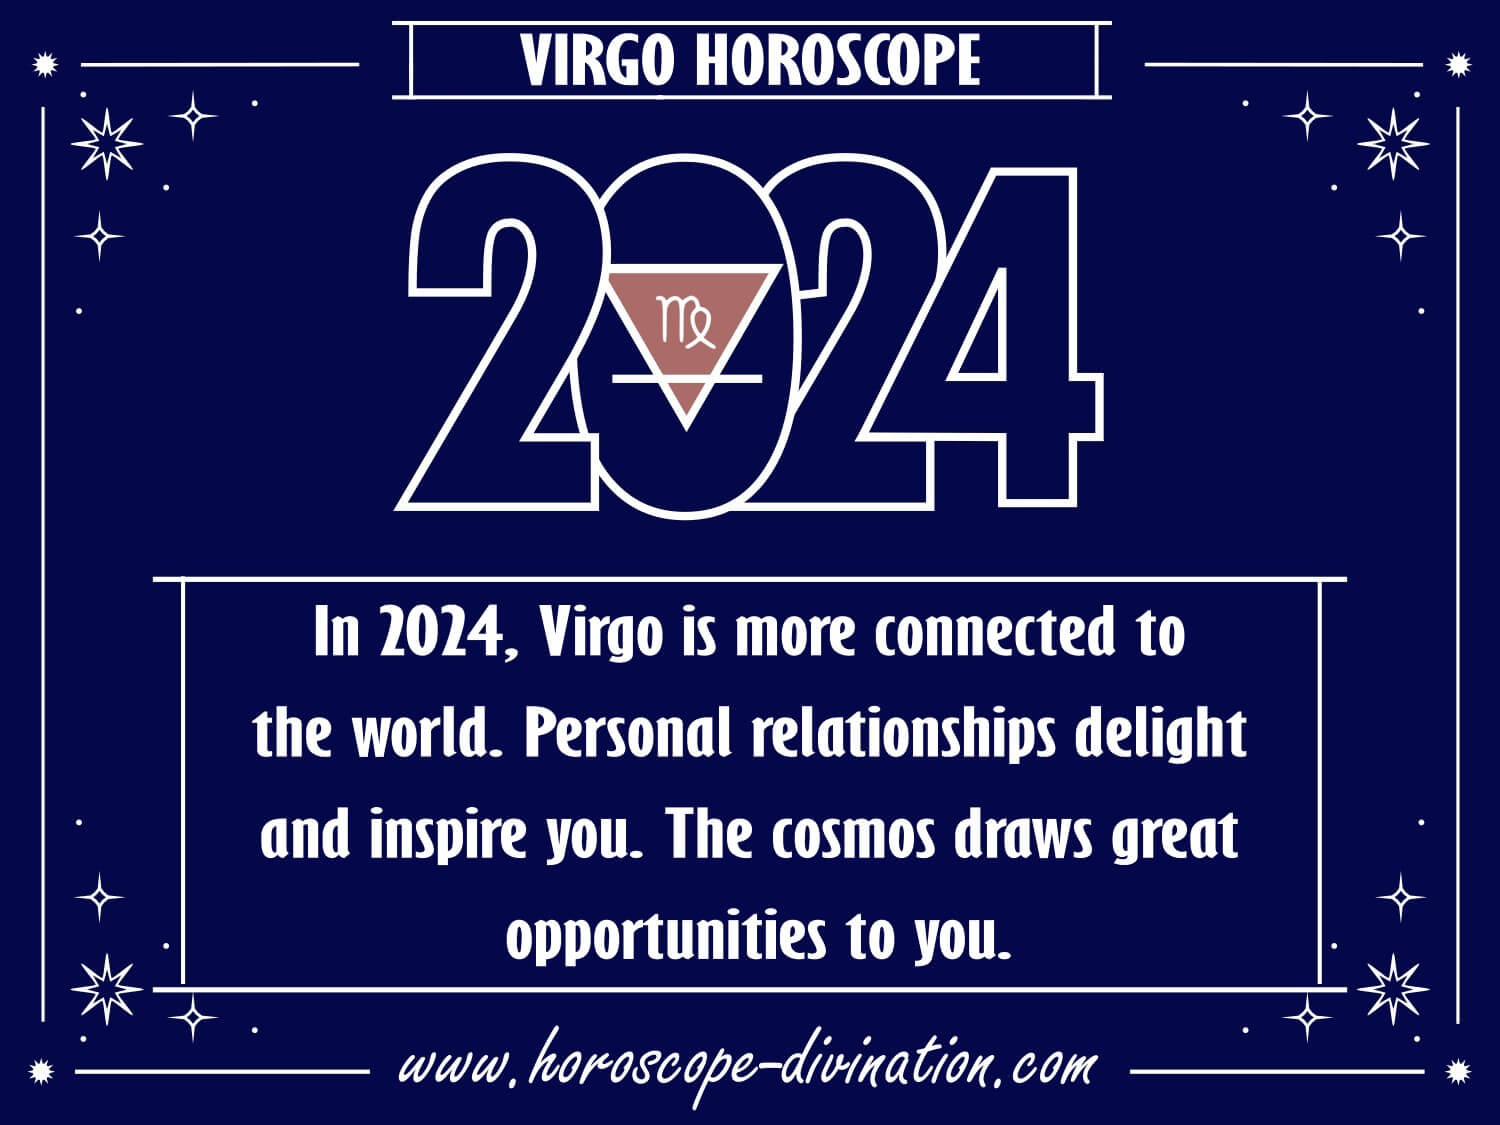 Virgo Horoscope 2024 Yearly predicton on